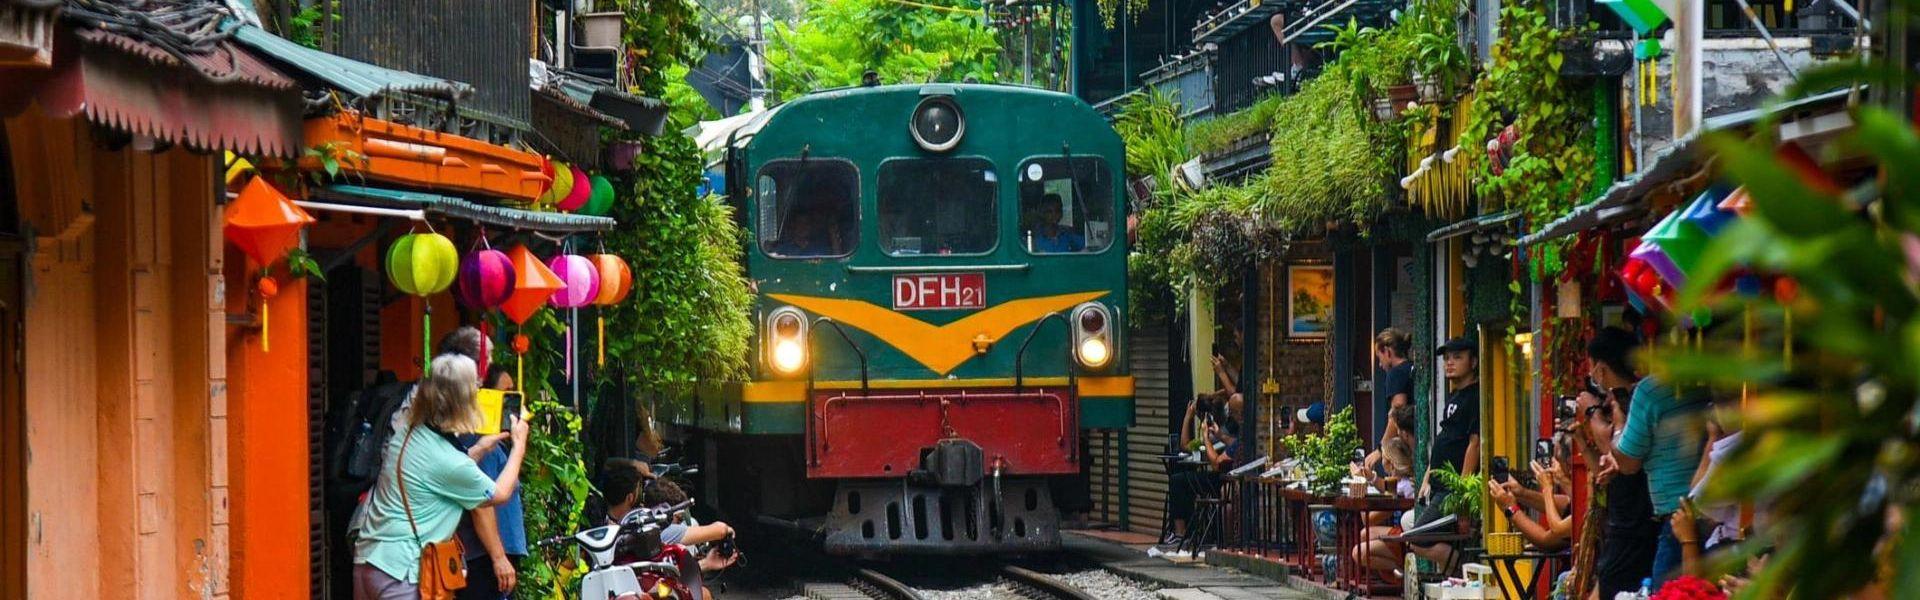 Horaire des trains à la rue du train à Hanoi